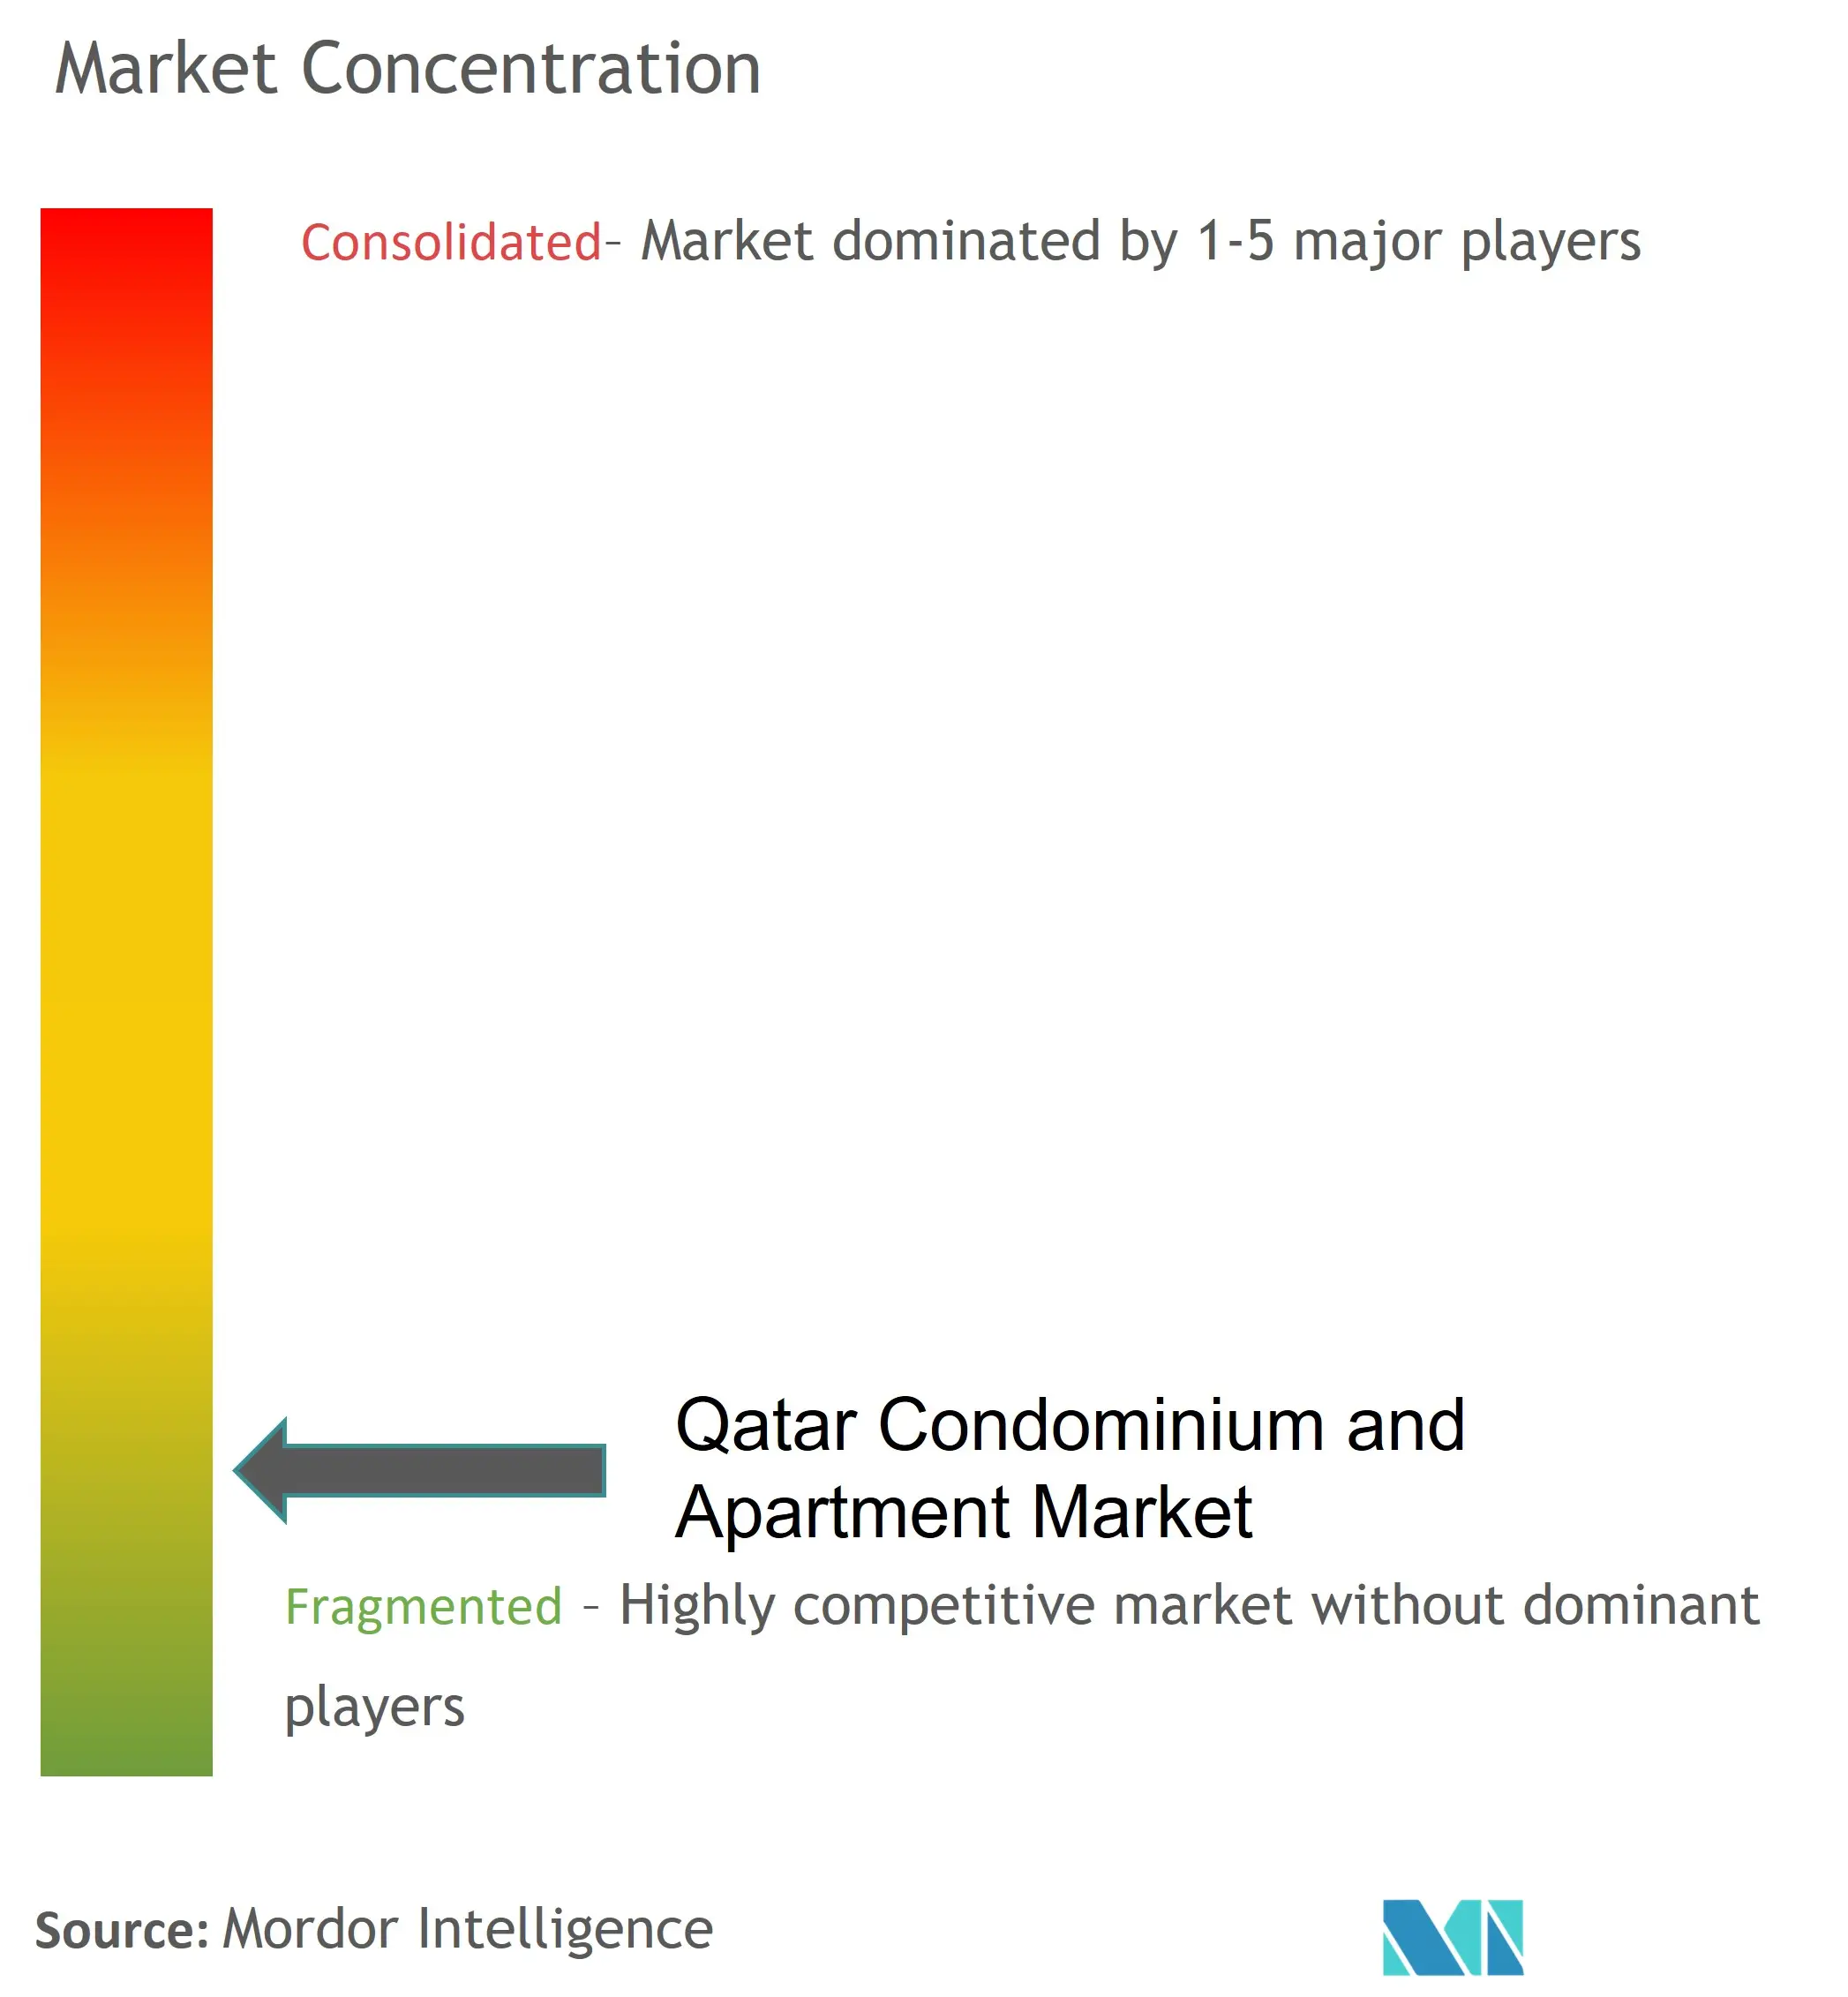 カタールのコンドミニアムおよびアパート市場:競合情勢